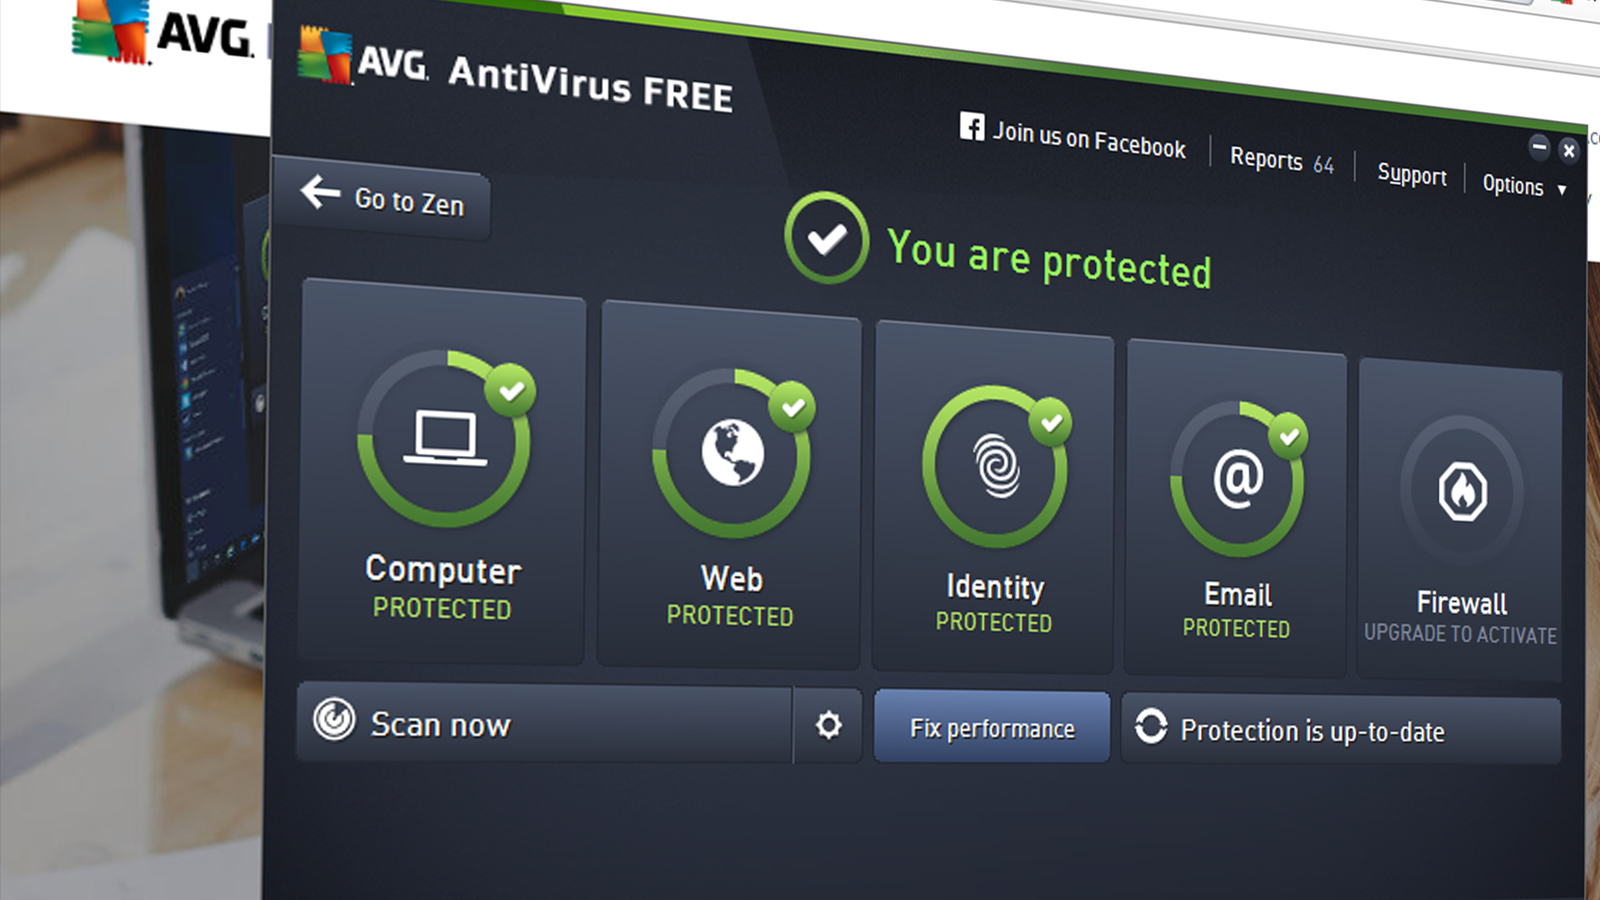 avg antivirus free